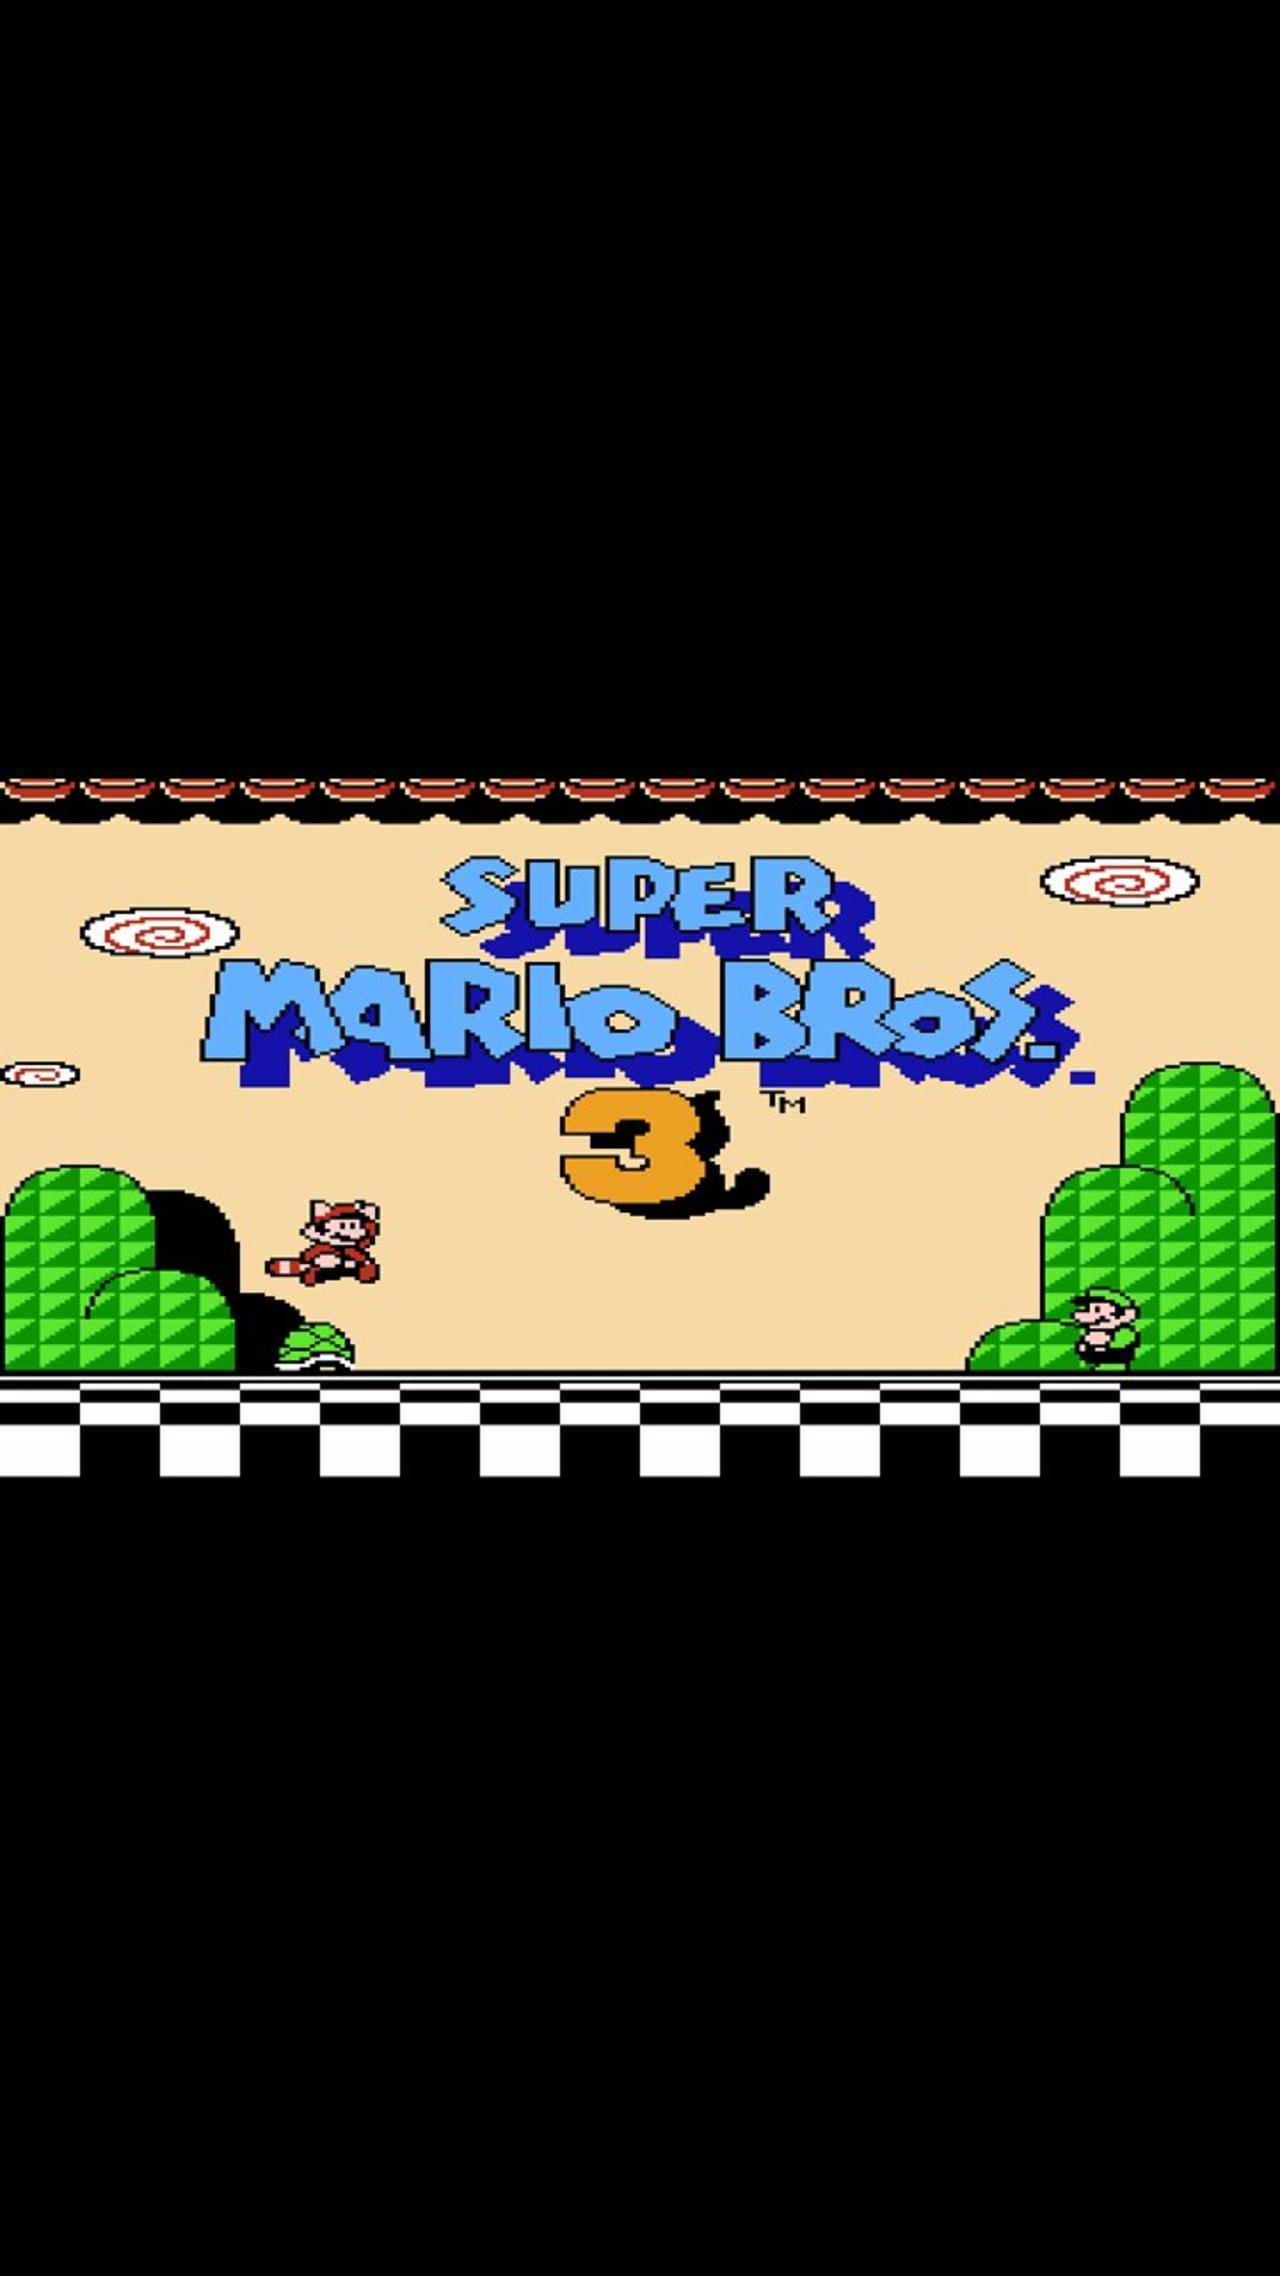 Super Mario Bros. 3 (1990) Full Game Walkthrough [NES]